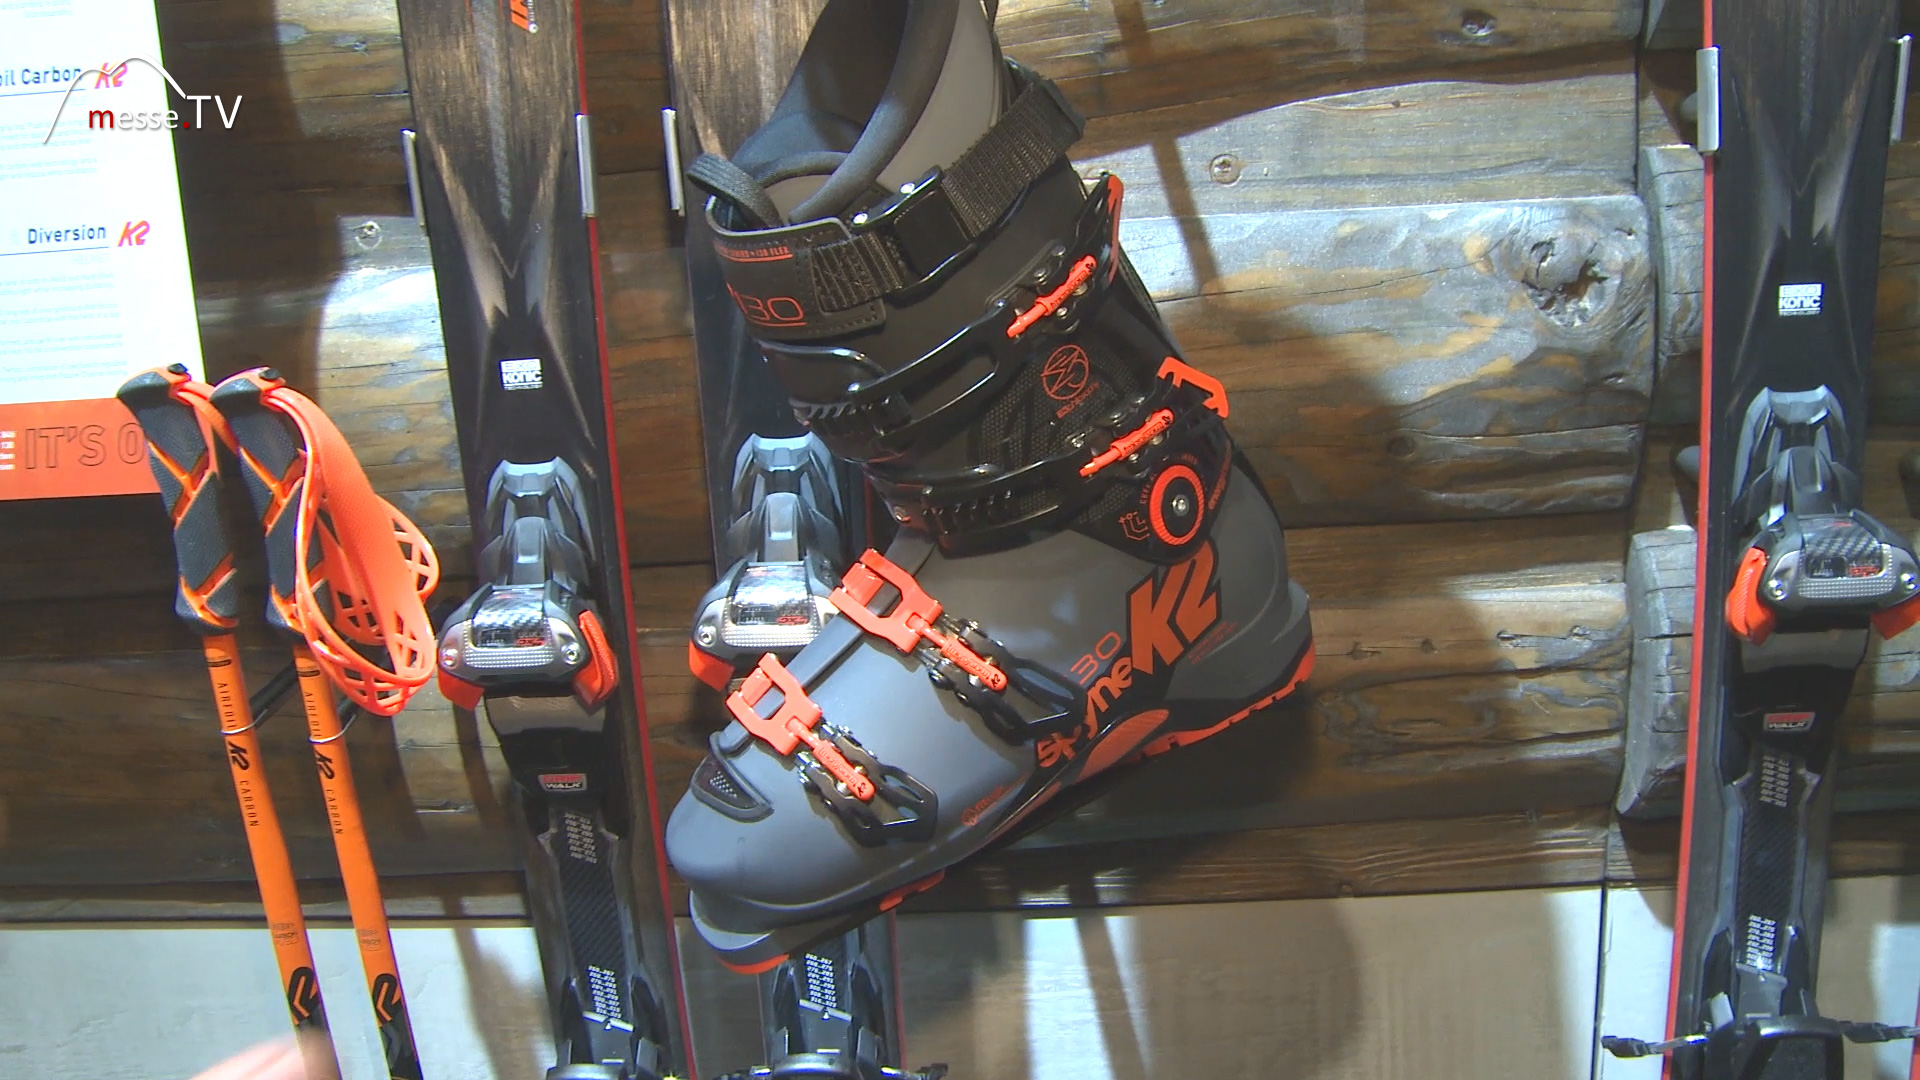 Ski boot Spyne K2 Skis